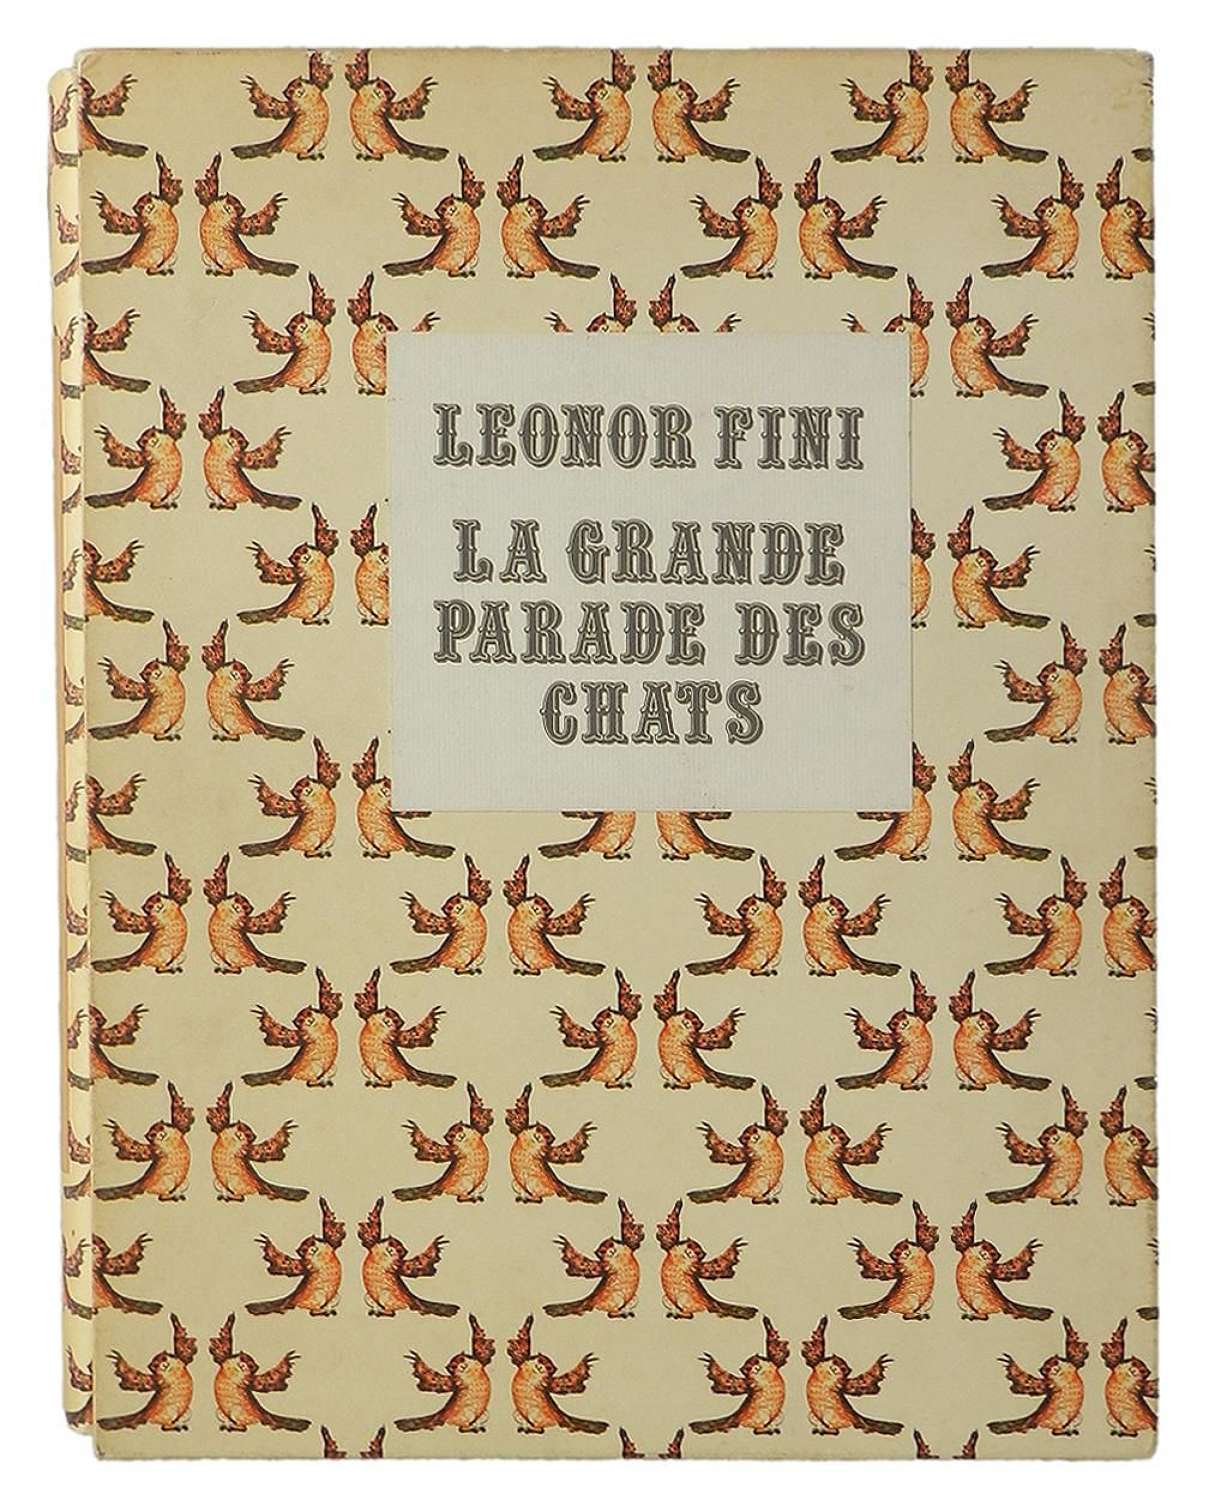 La Grande Parade des Chats 60 Illustrations of Cats by Leonor Fini 197